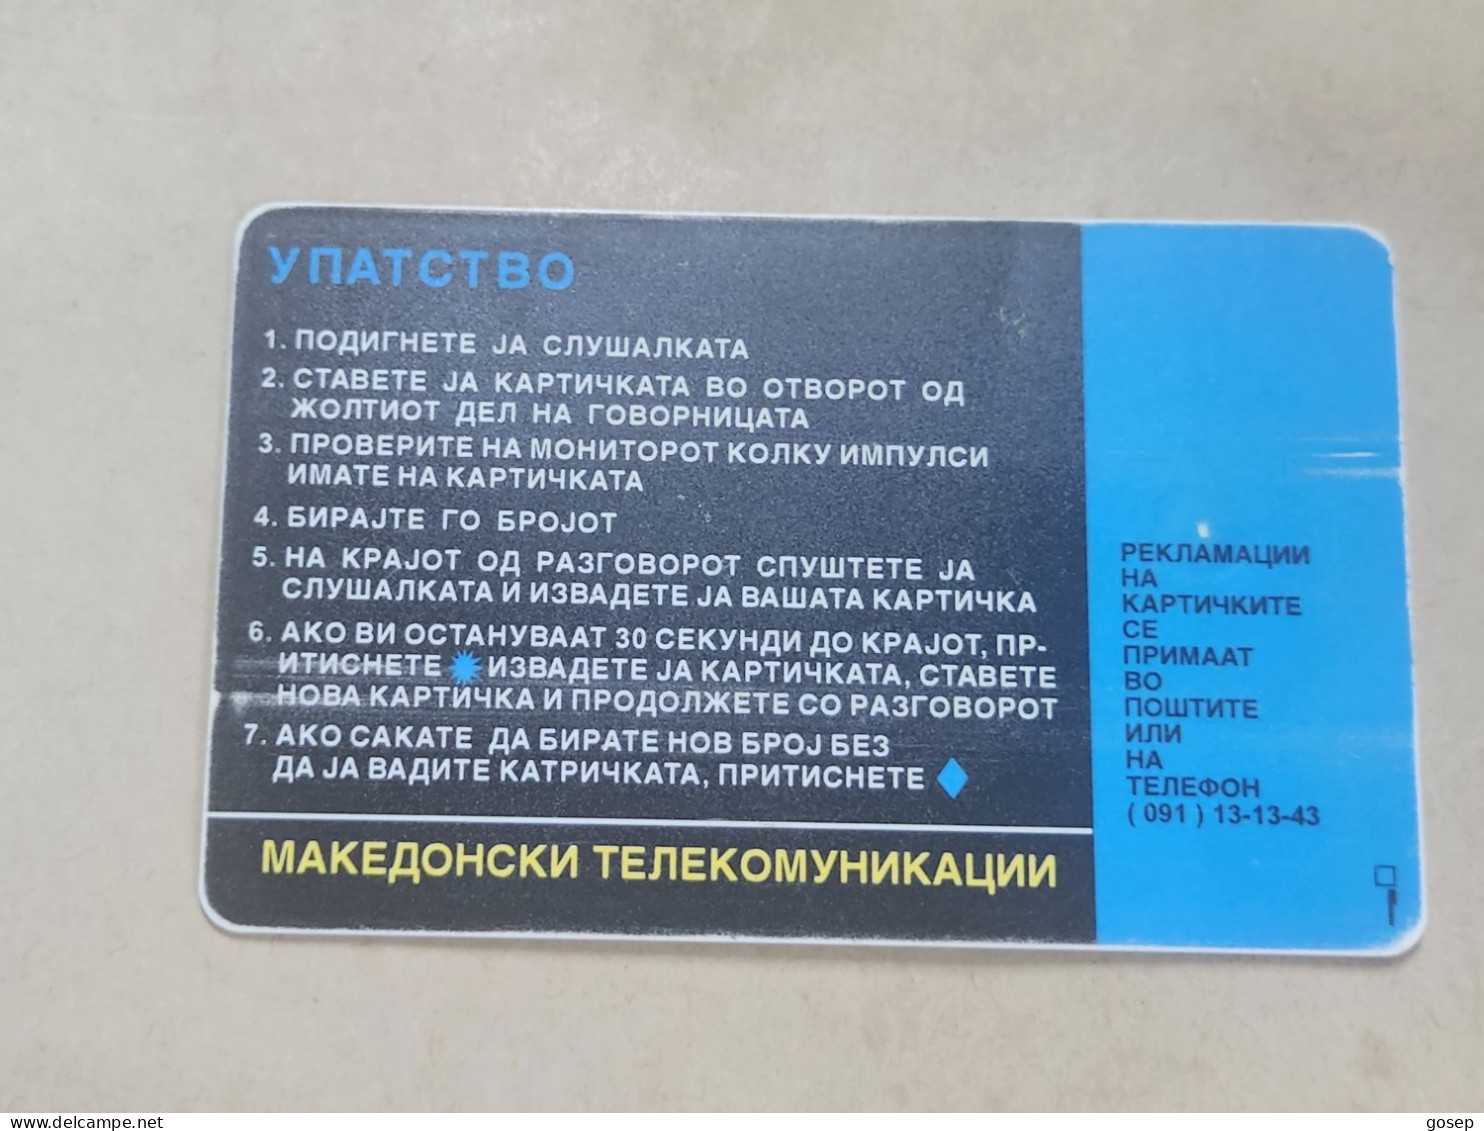 Macedonia-(MK-MAT-0001A)-ISDN/istructions-(30)-(4/97)-(200units)-(00162537)-tirage-70.000-used Card+1card Prepiad Free - Macedonia Del Nord